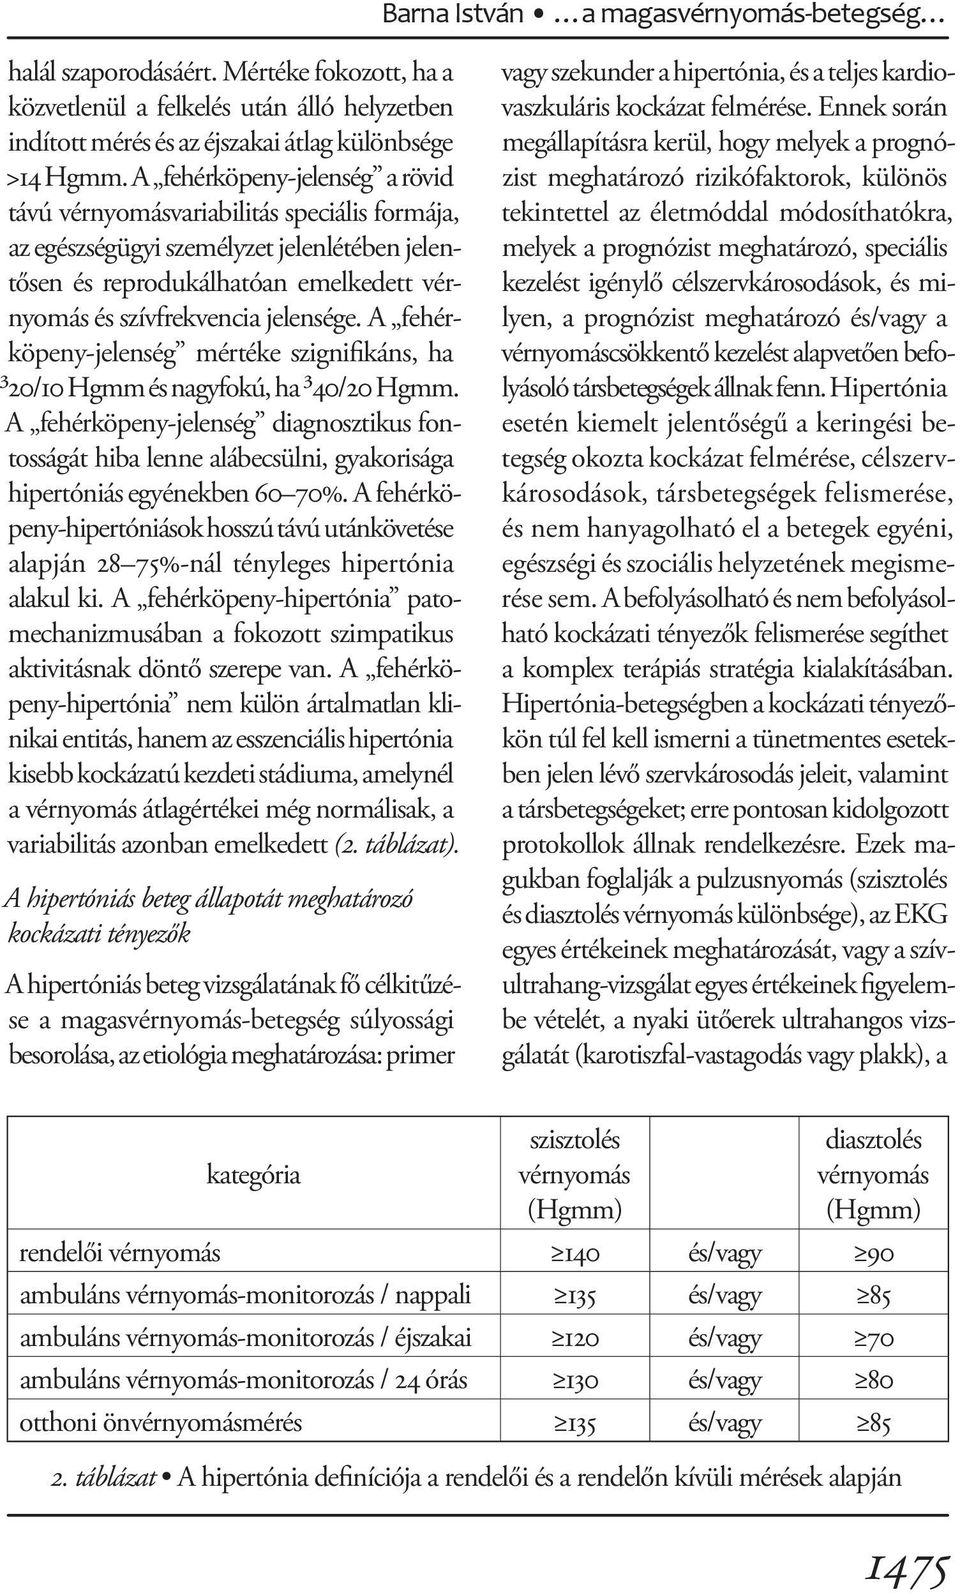 A hypertonia epidemiológiája Magyarországon | eLitMed